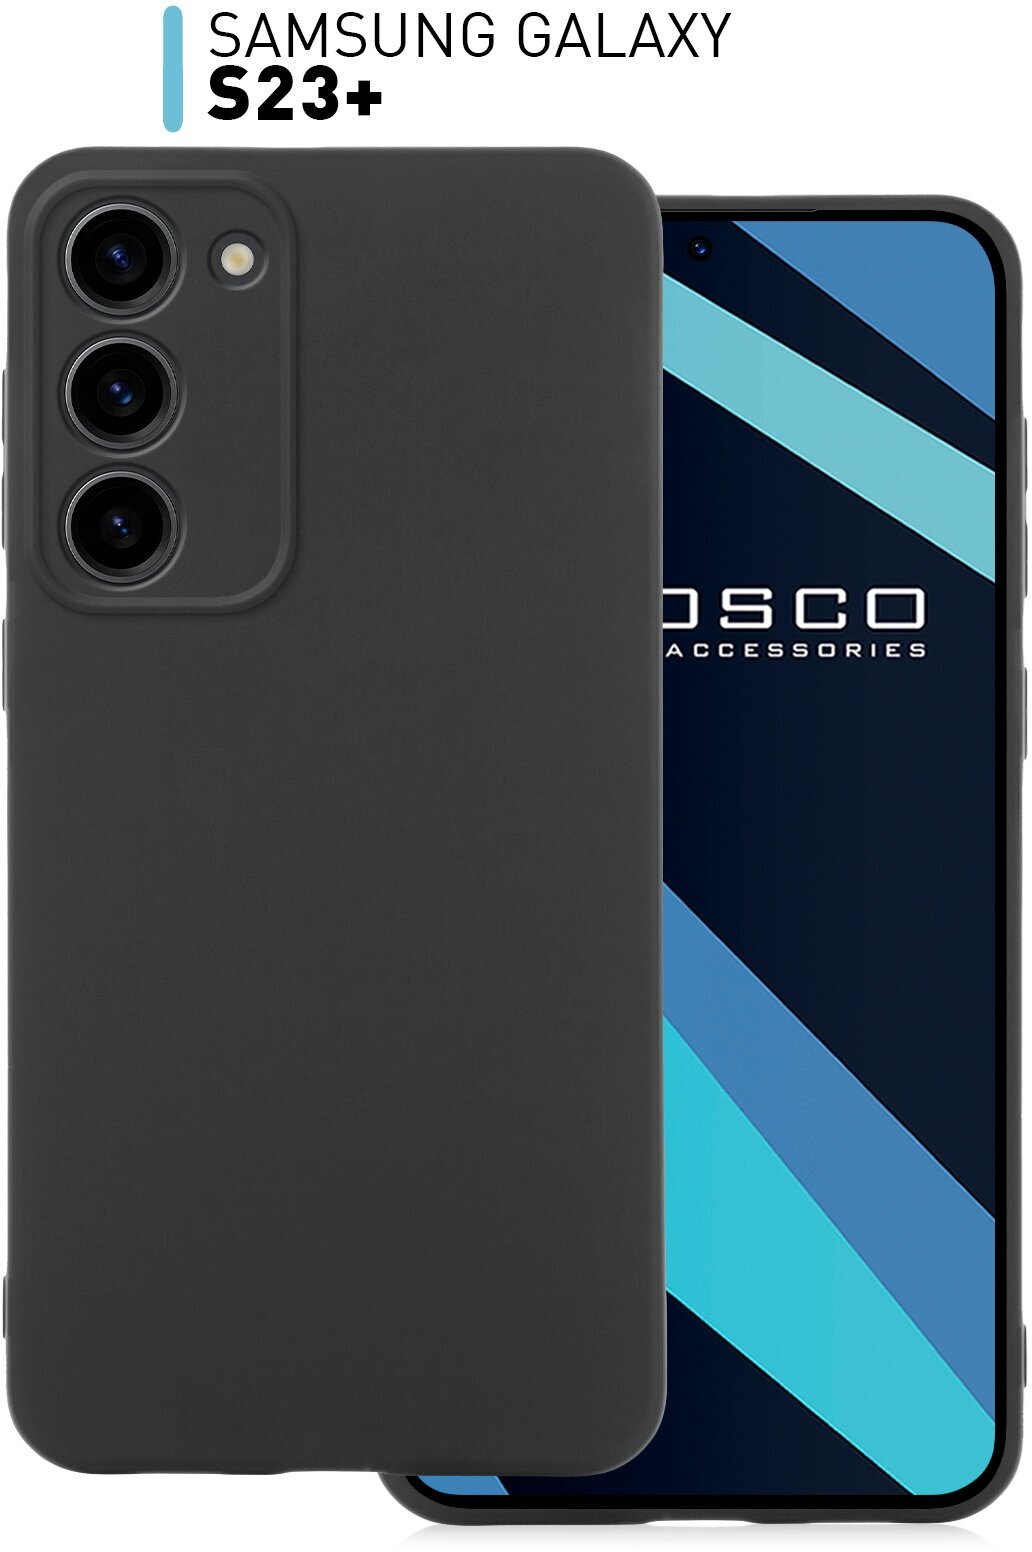 Чехол ROSCO для Samsung Galaxy S23+, S23 Plus (Самсунг Галакси С23 Плюс), силиконовый чехол, тонкий, матовое покрытие, защита модуля камер, черный